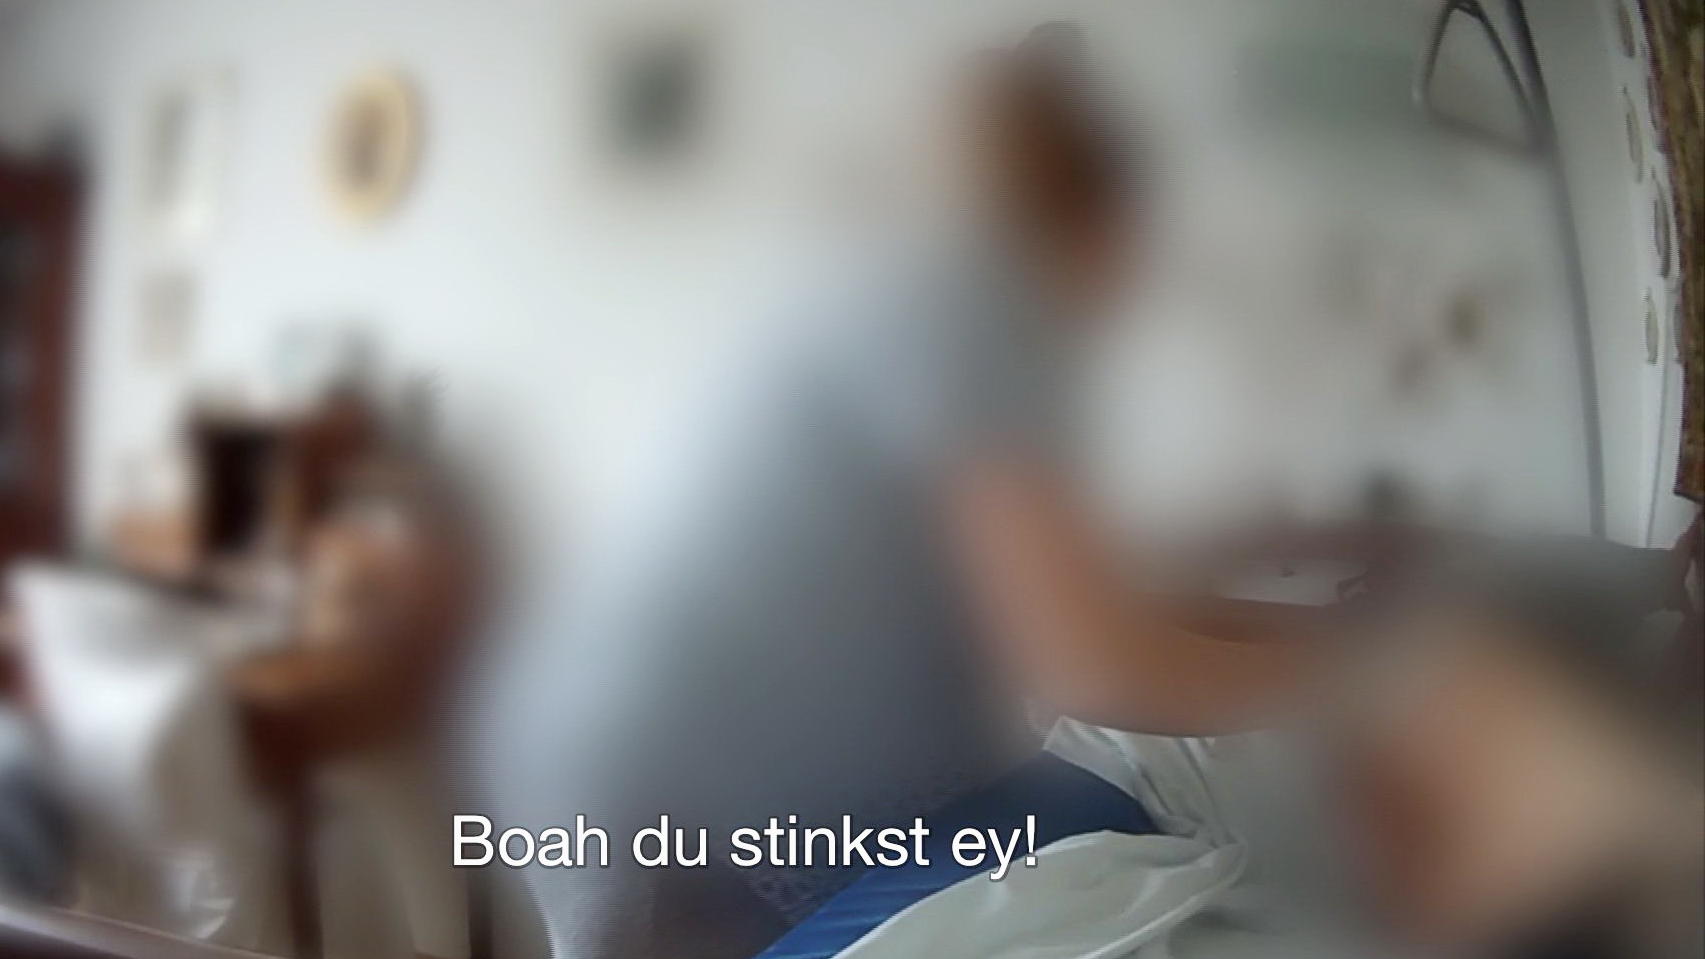 Physische und psychische Gewalt in DRK-Seniorenheim in Hessen: "Extra"-Reportage deckt neue Dimension von menschenverachtenden Zuständen auf